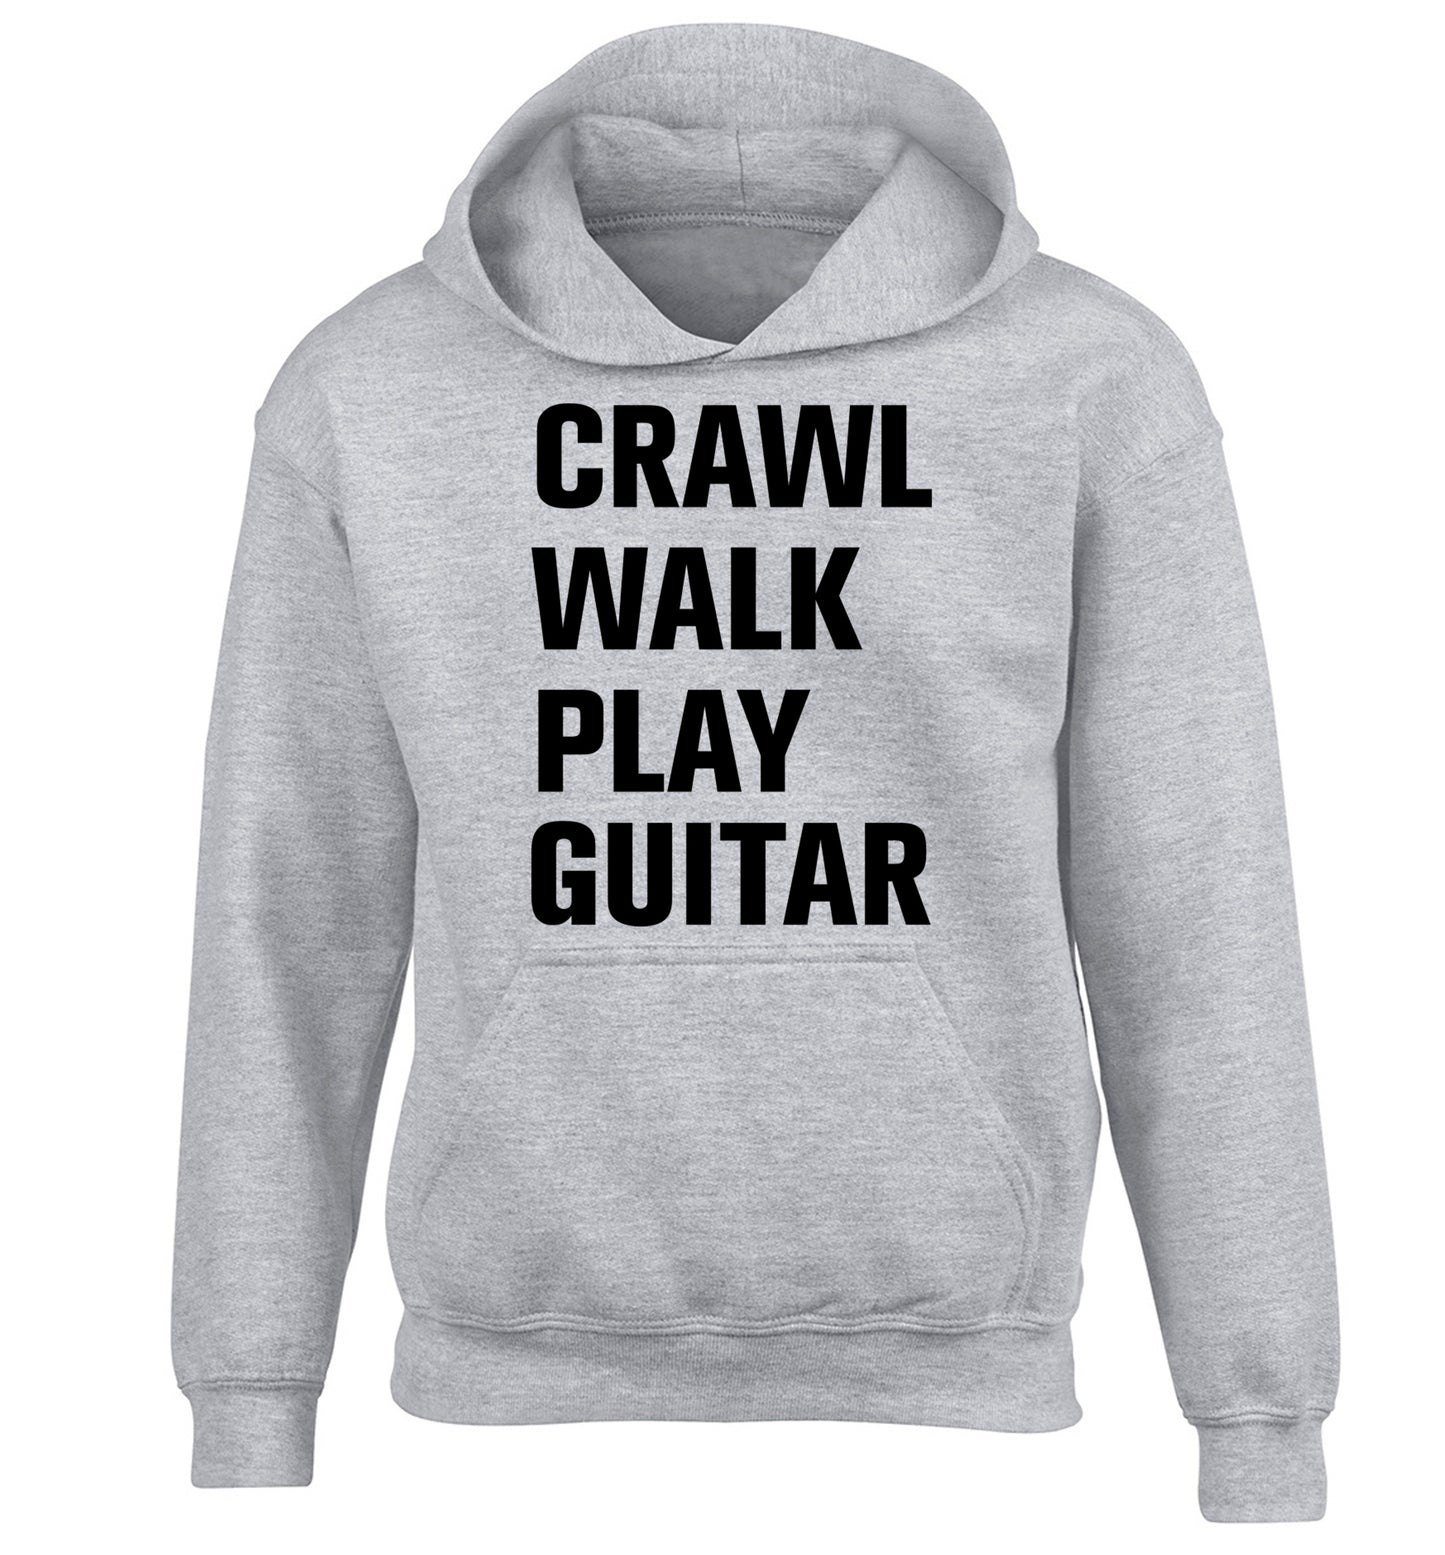 Crawl walk play guitar children's grey hoodie 12-13 Years